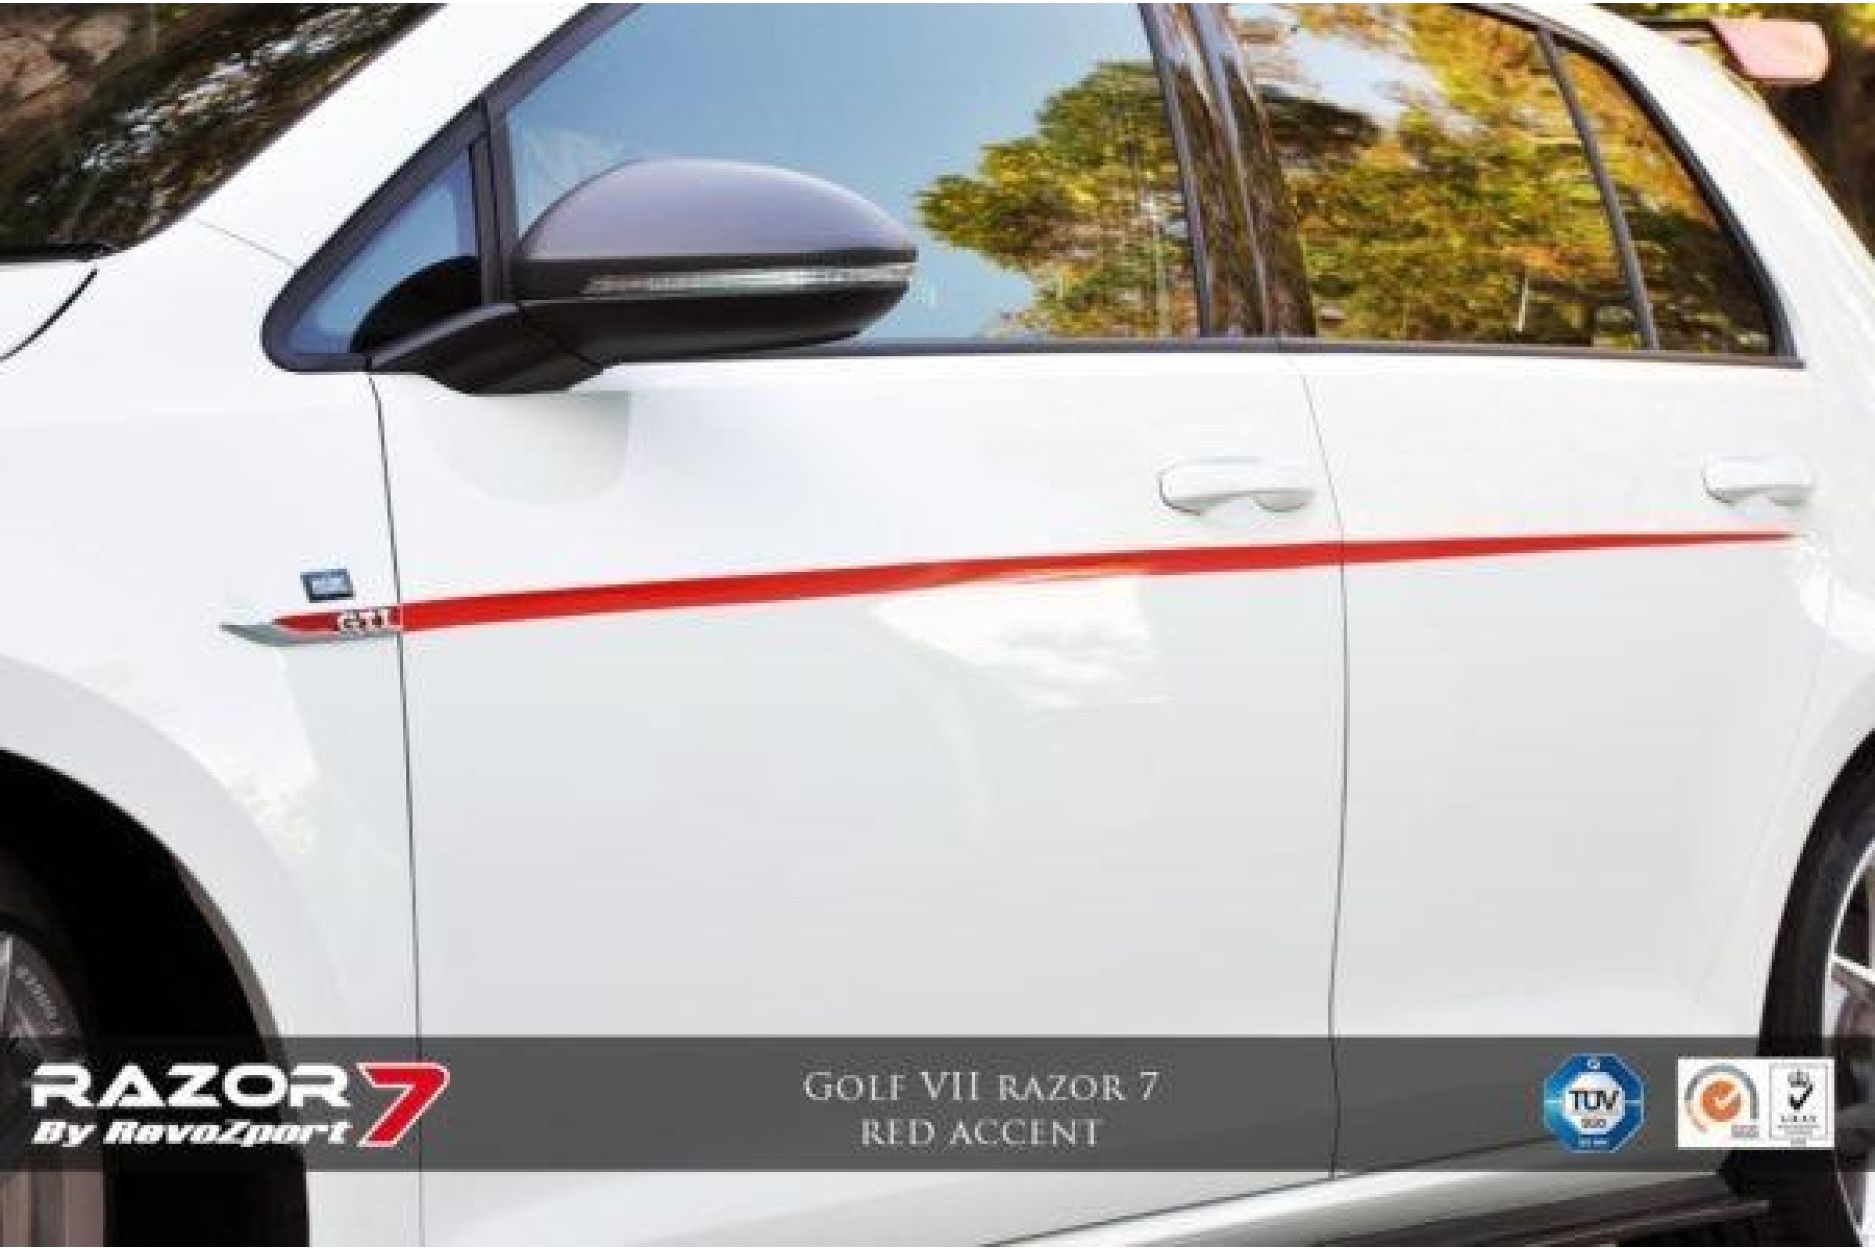 RevoZport Carbon Bodykit for Volkswagen Golf MK7|Golf 7 GTI pre-facelift "Razor 7" (4) 